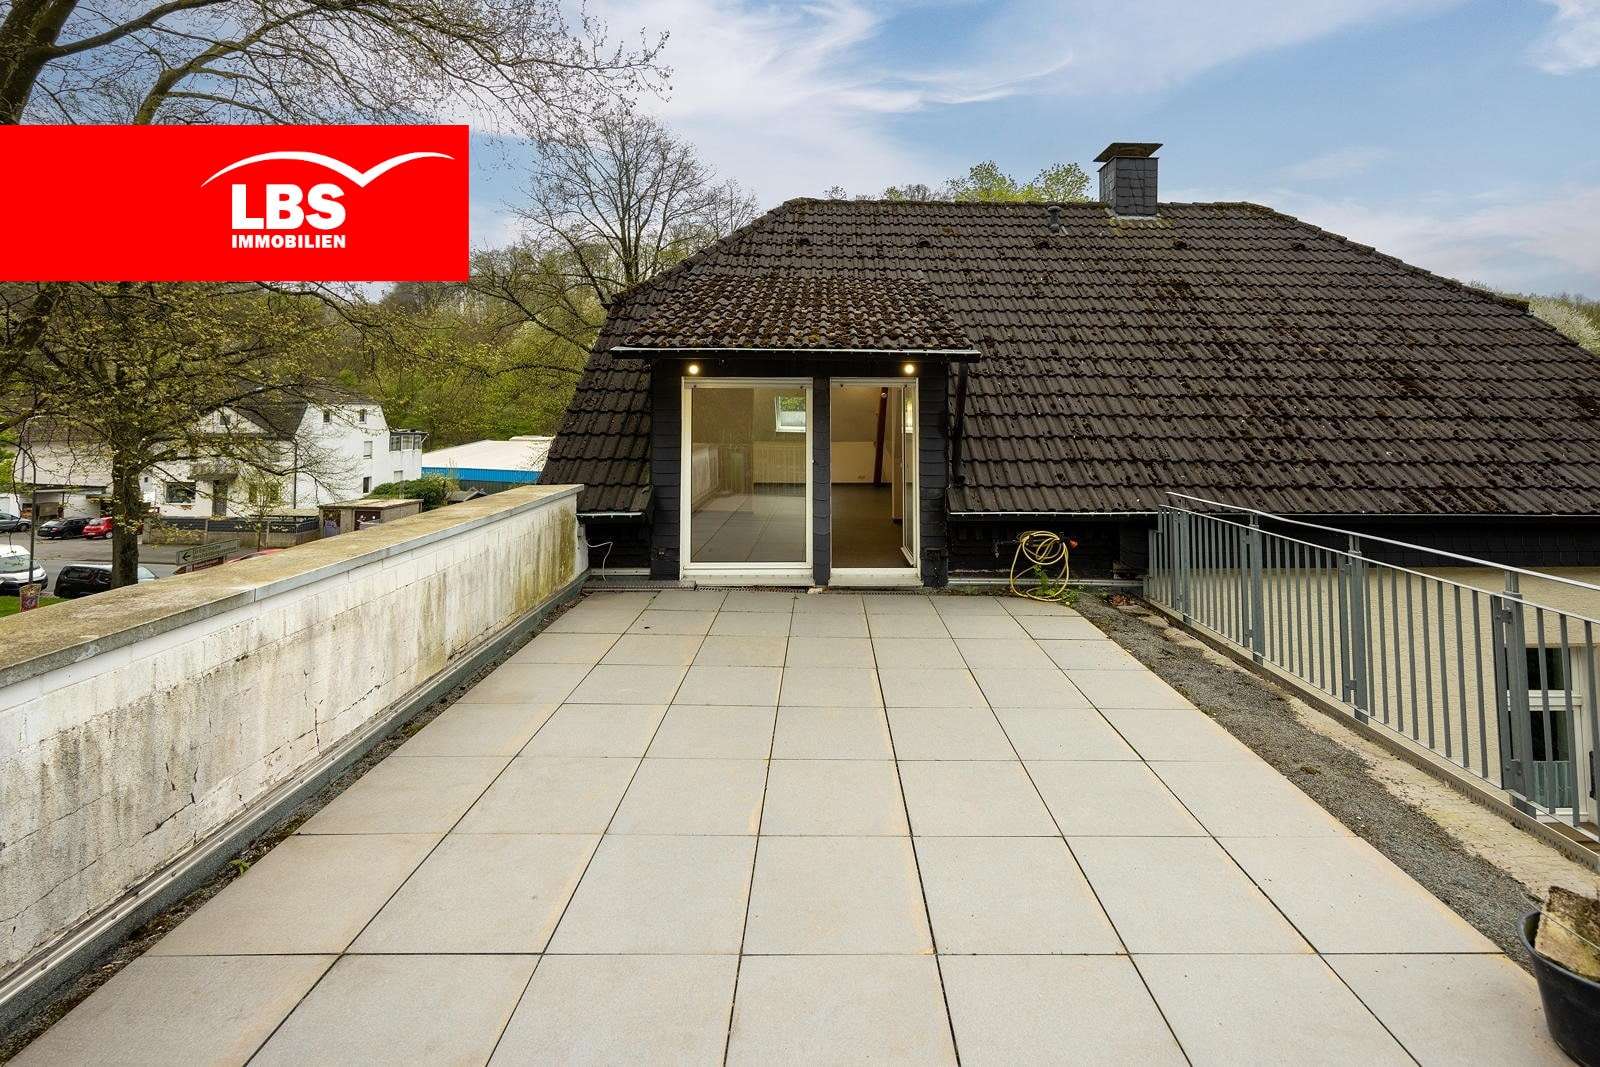 Dach-Terrasse - Dachgeschosswohnung in 58644 Iserlohn mit 80m² kaufen